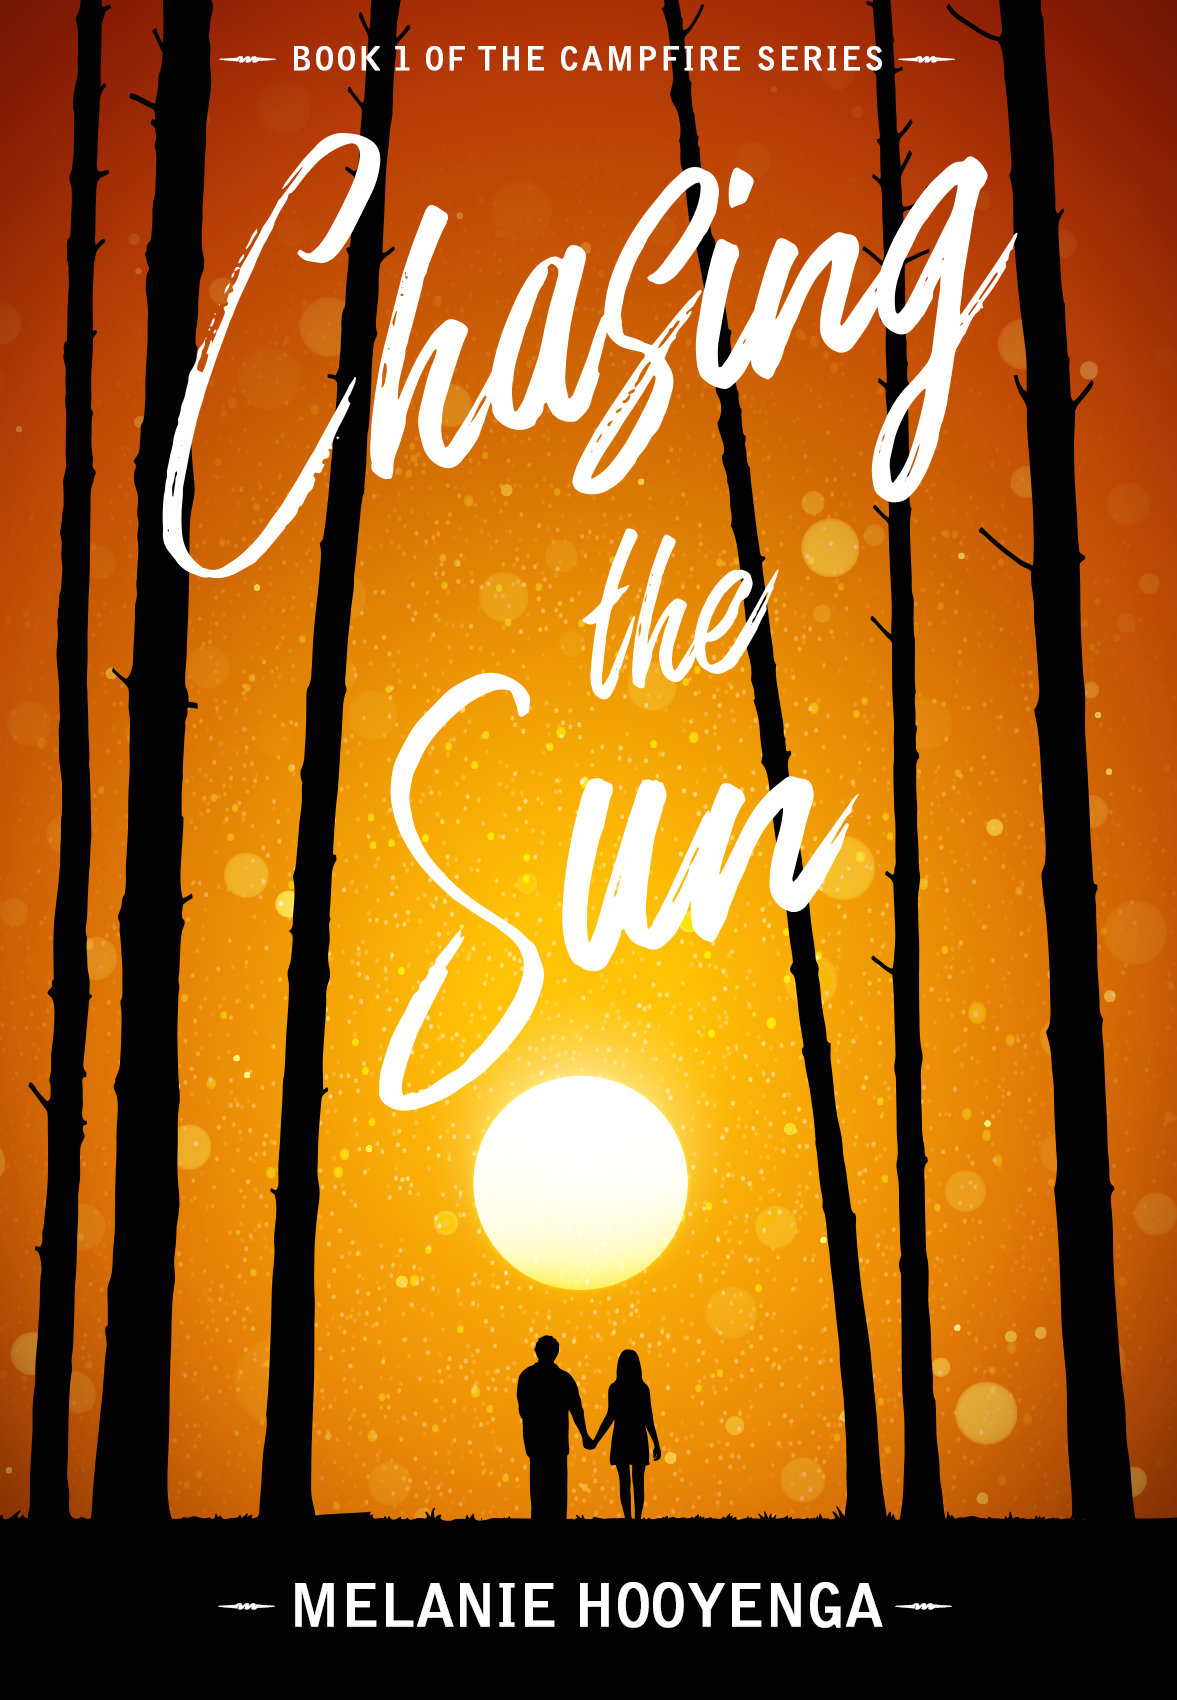 Chasing the Sun - Melanie Hooyenga